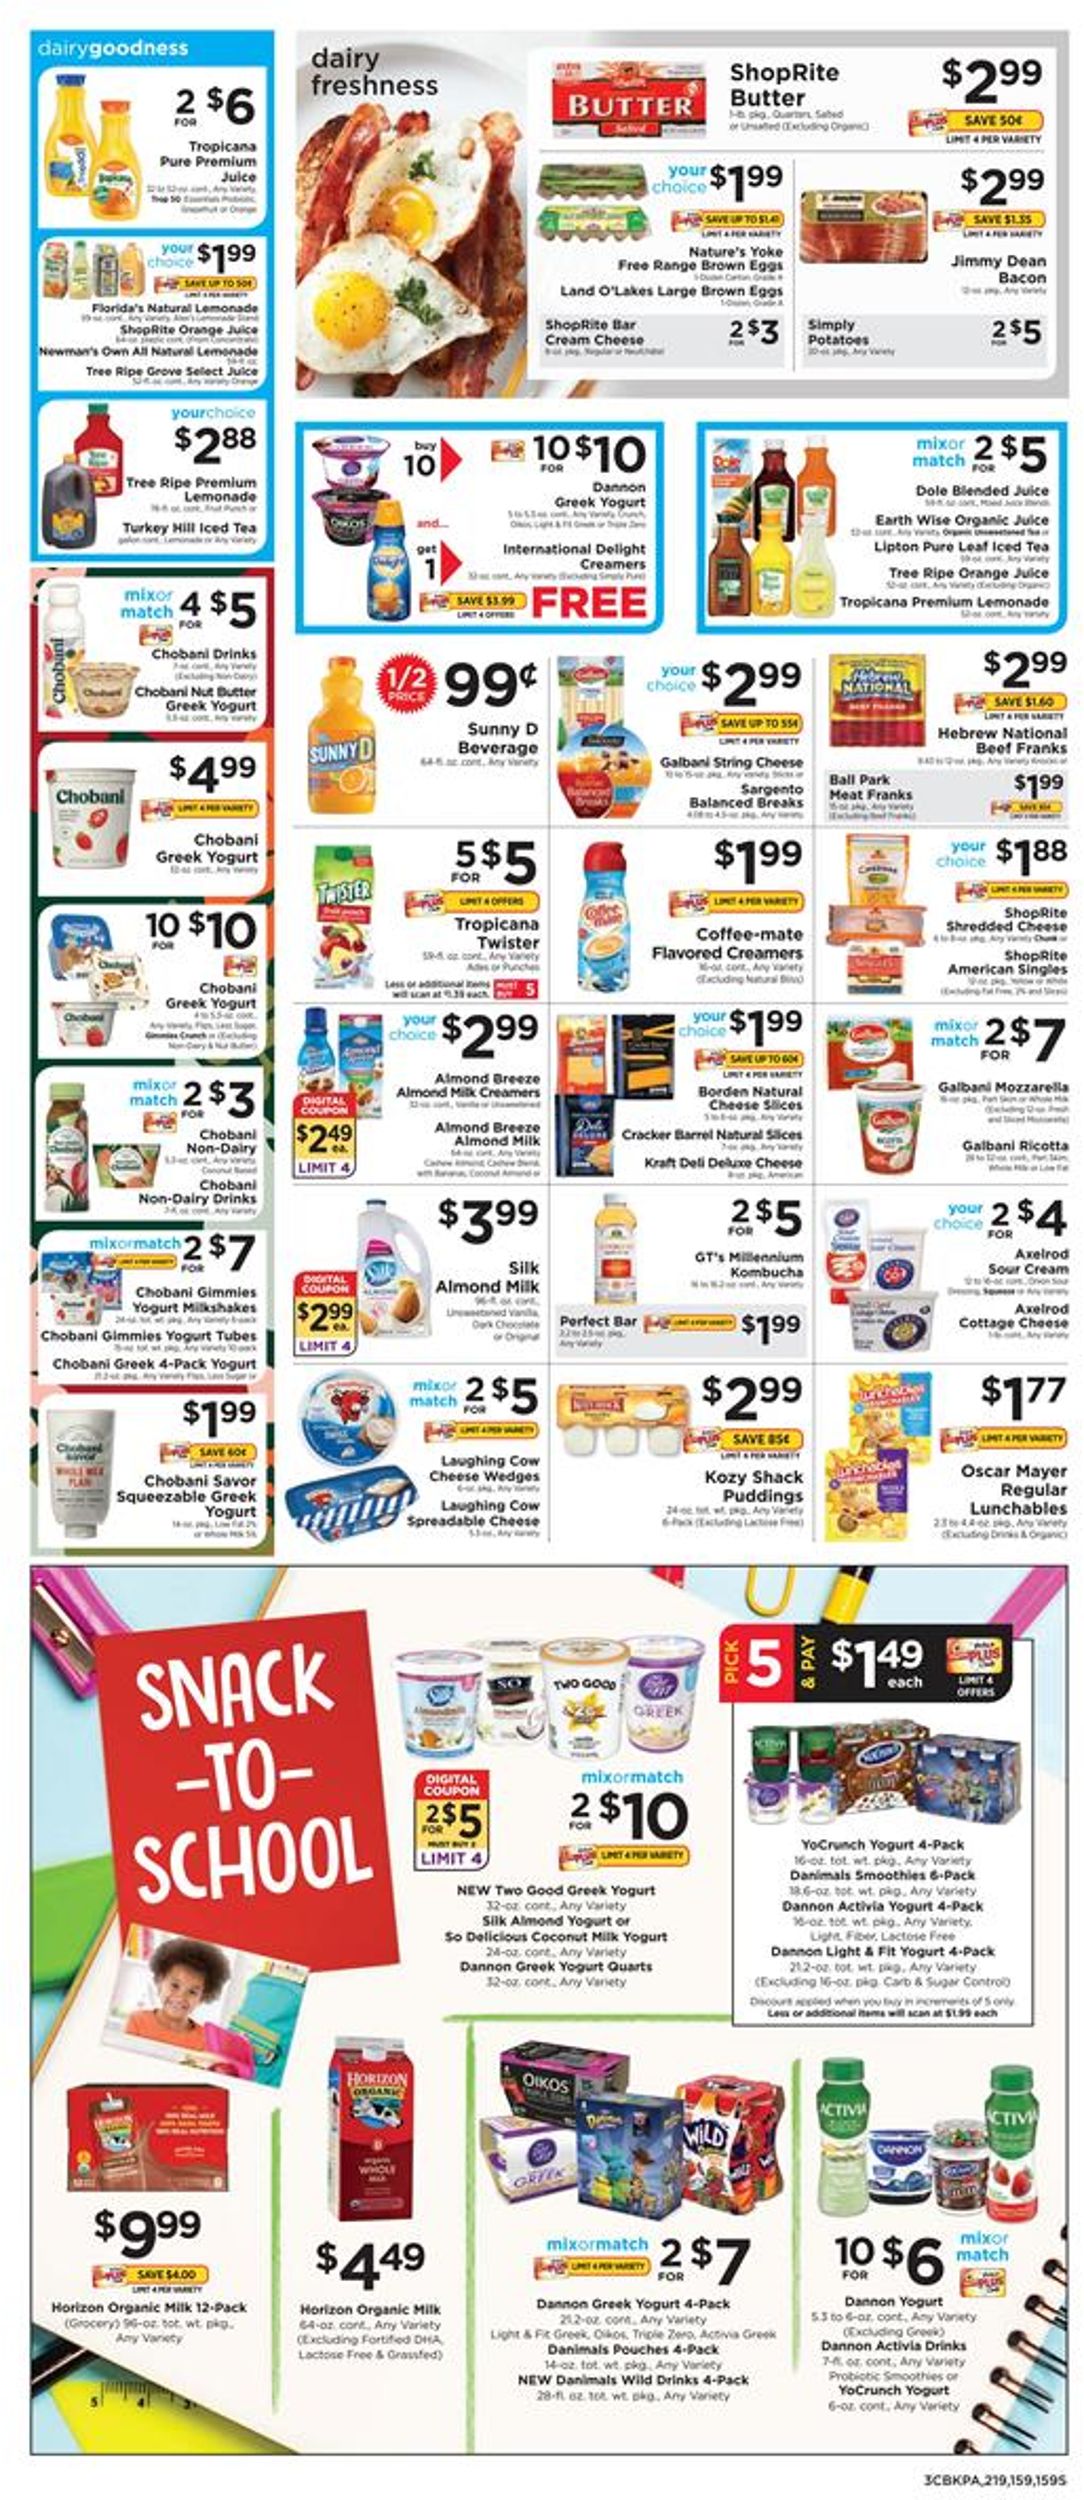 ShopRite Weekly Ad Circular - valid 08/11-08/17/2019 (Page 3)